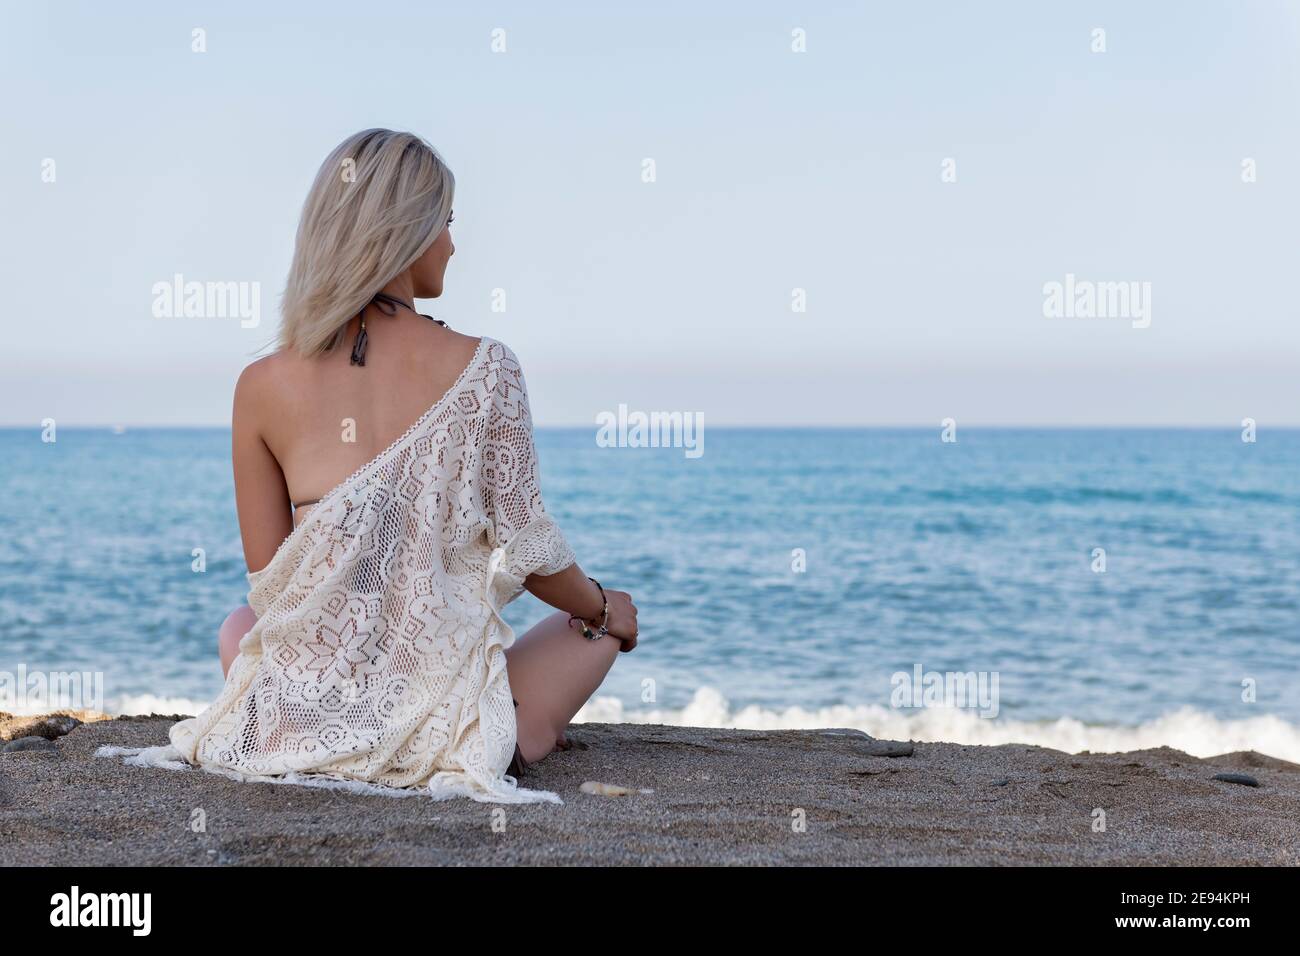 Eine Person, die an einem Strand sitzt. Hochwertige Fotos Stockfoto